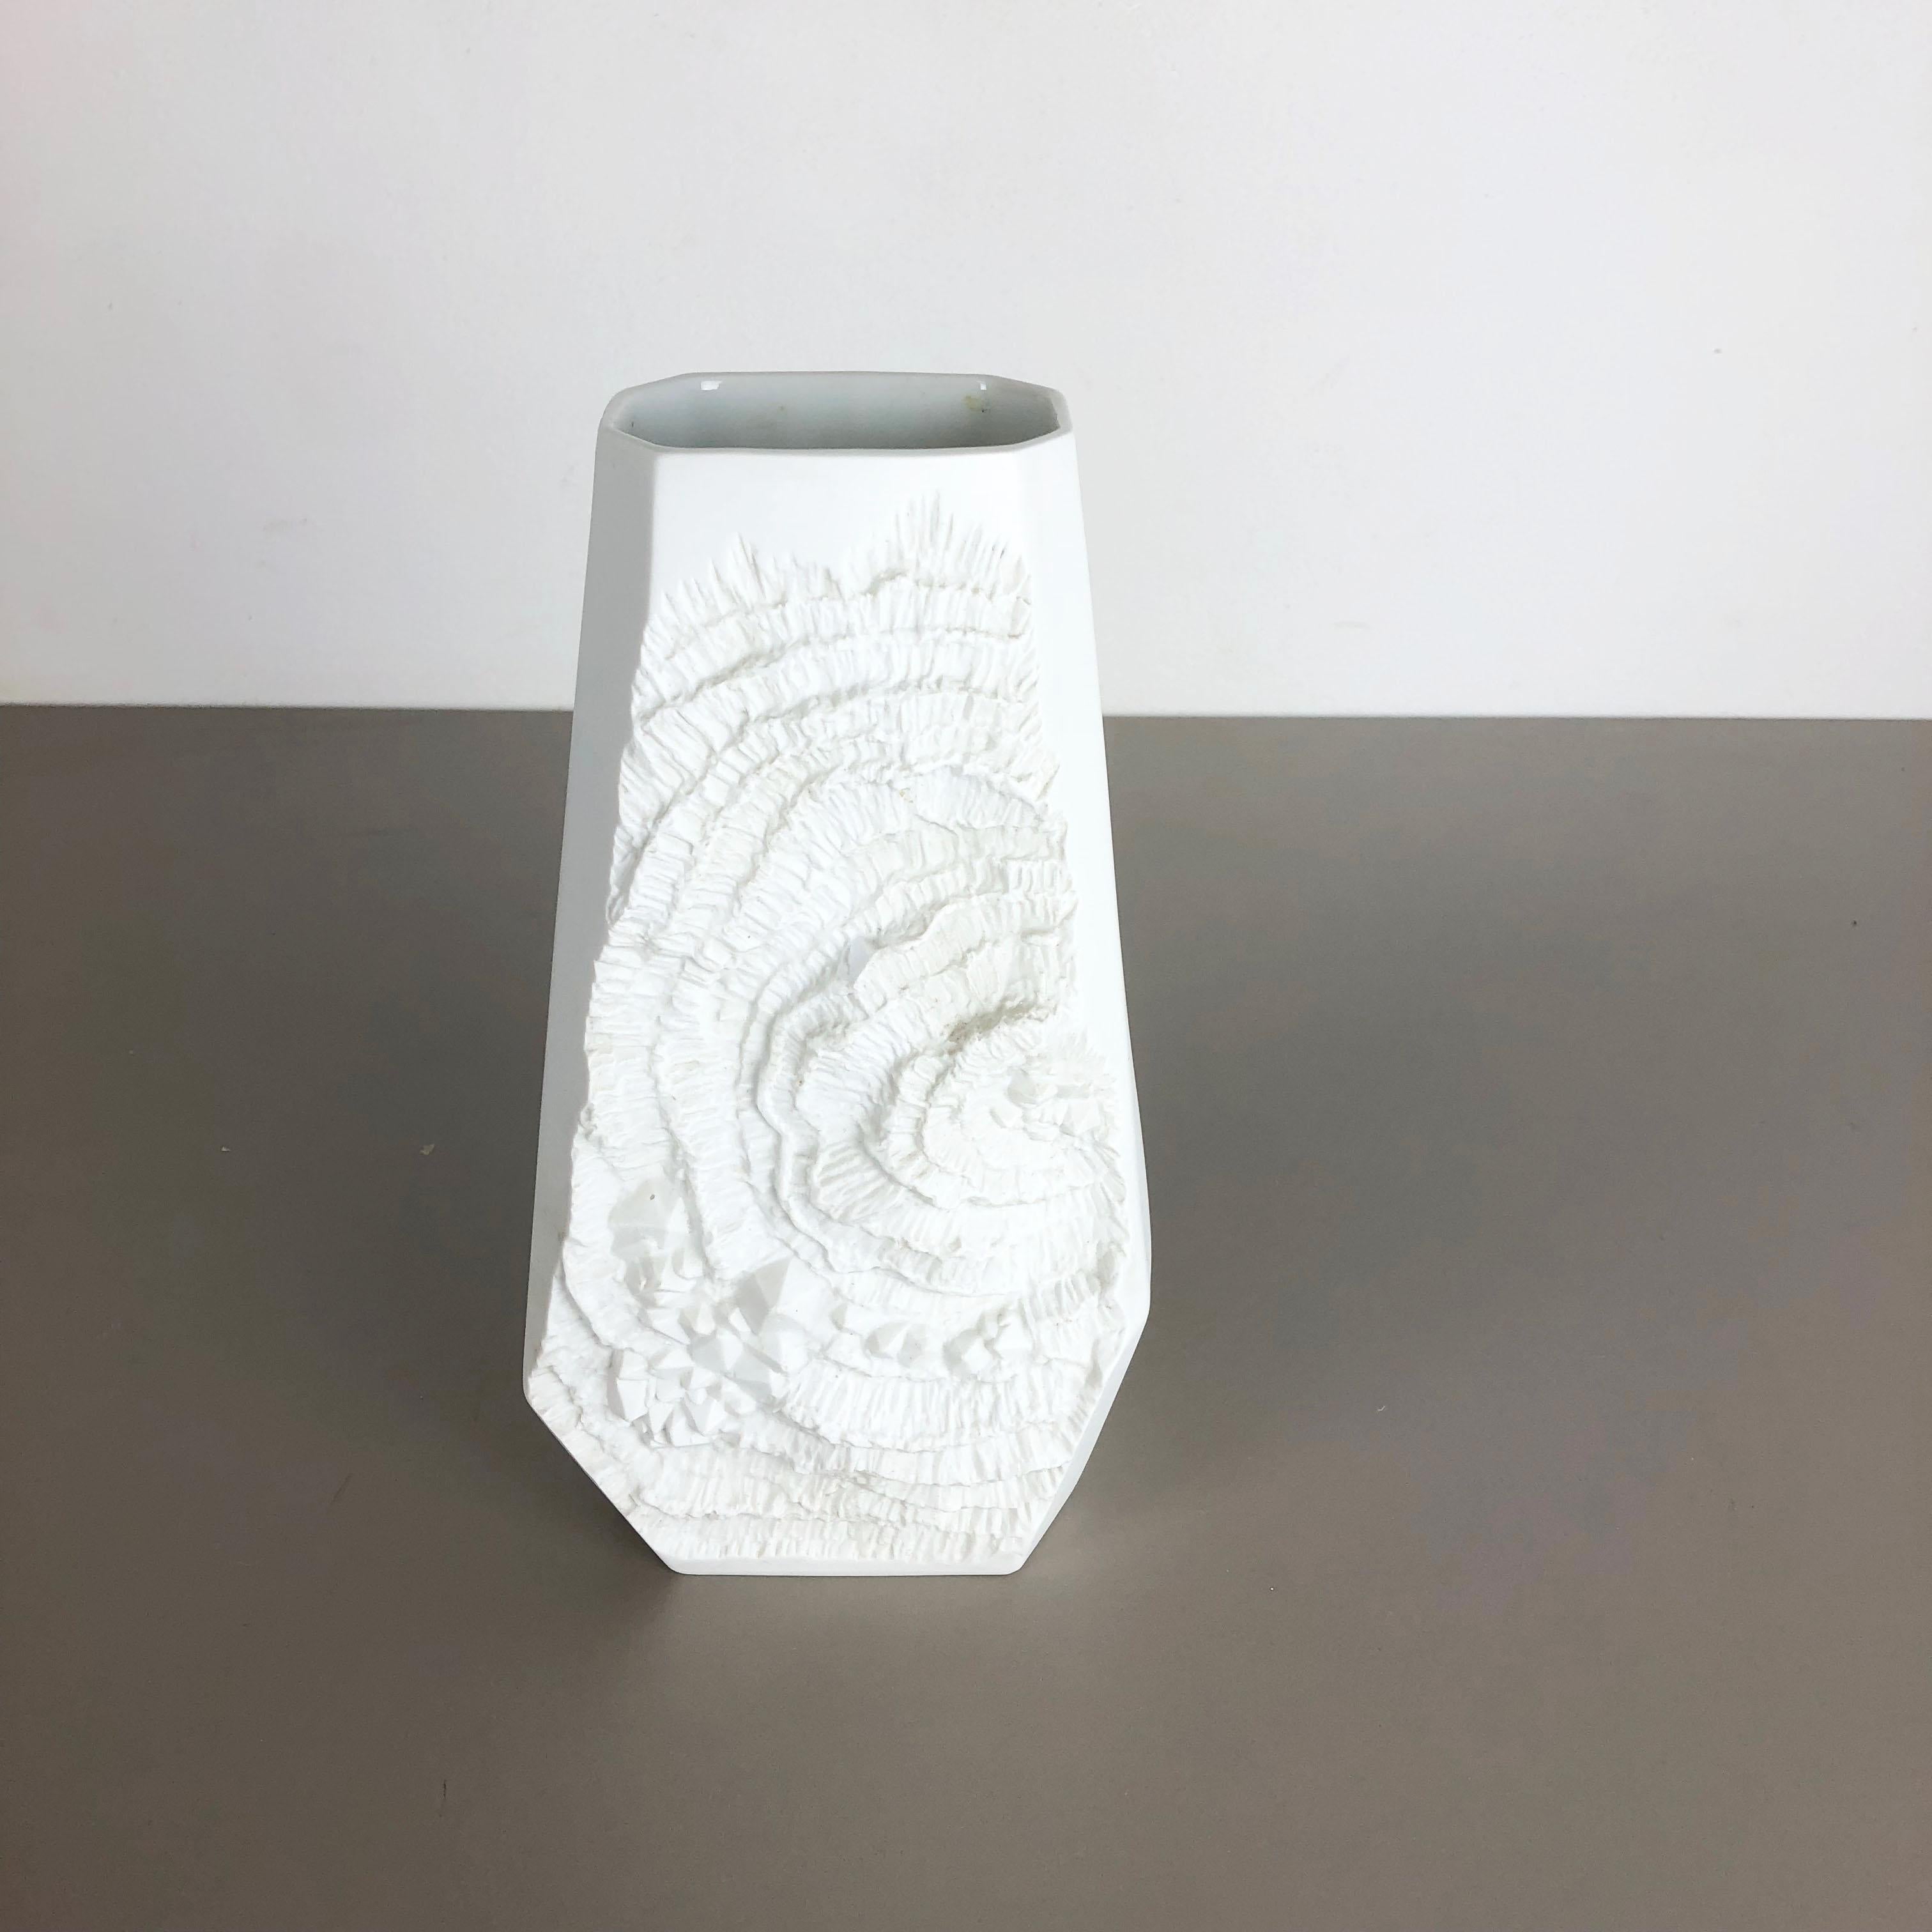 Artikel:

Op Art Porzellanvase


Produzent:

AK Kaiser, Deutschland


Beschreibung:

Diese originale Vintage OP Art Vase wurde in den 1970er Jahren in Deutschland hergestellt. Sie ist aus Porzellan mit einer OP Art Rock-Oberflächenoptik